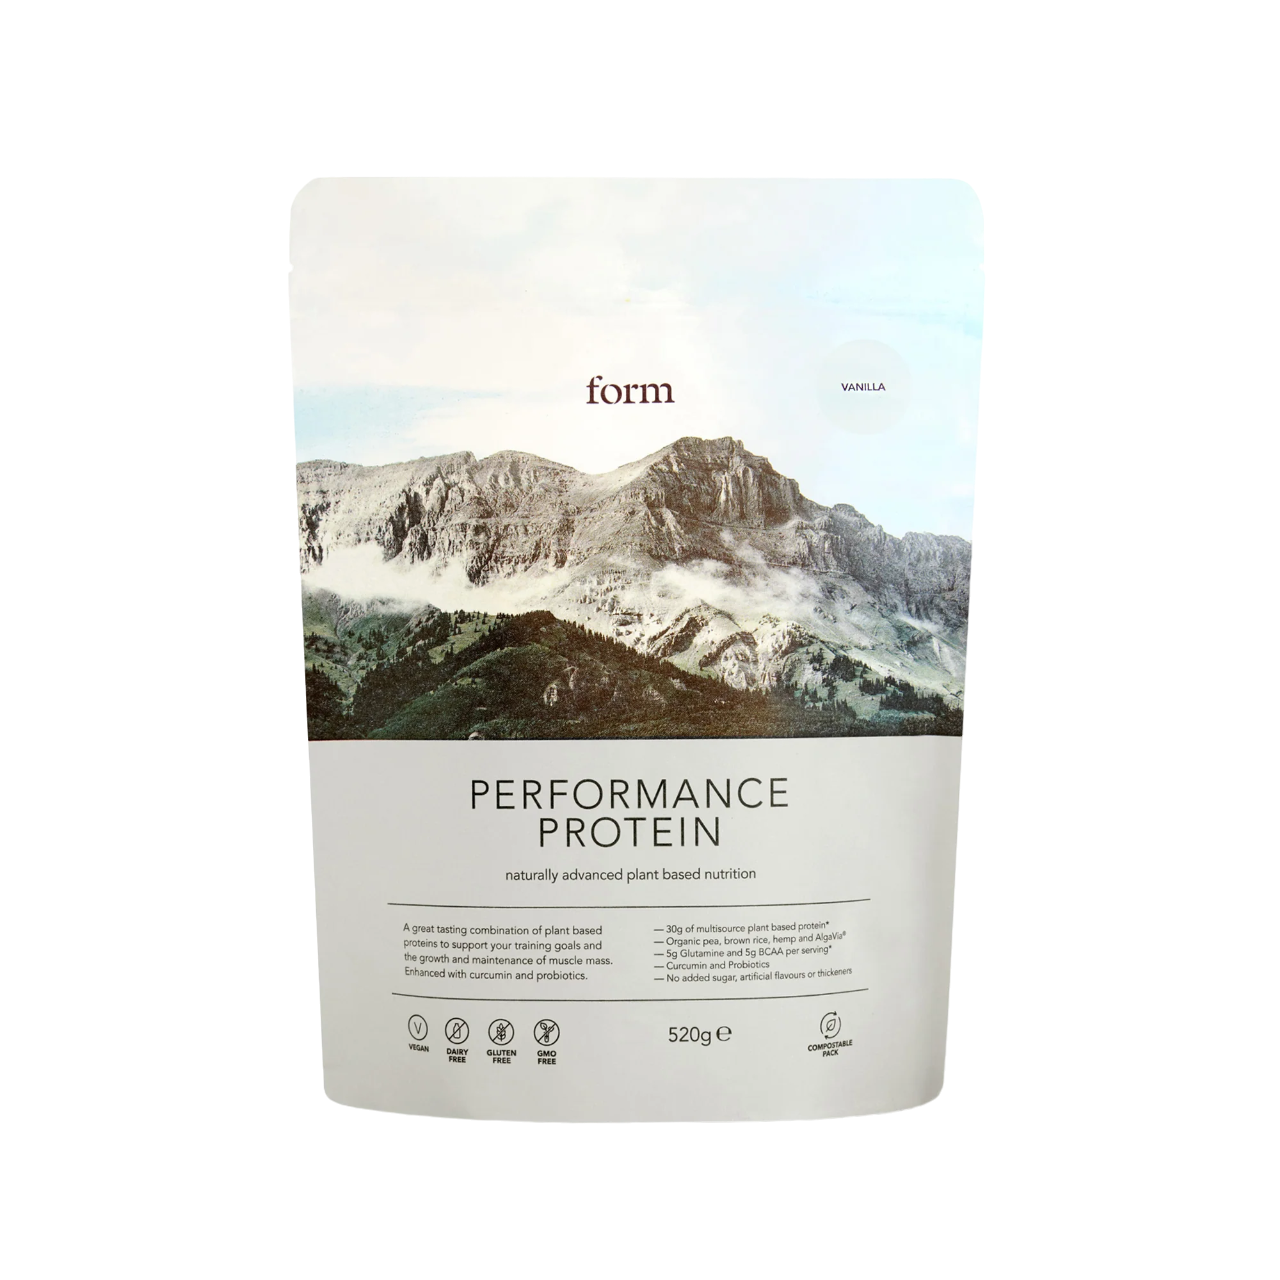 Best vegan protein powder - Form nutrition vegan protein powder